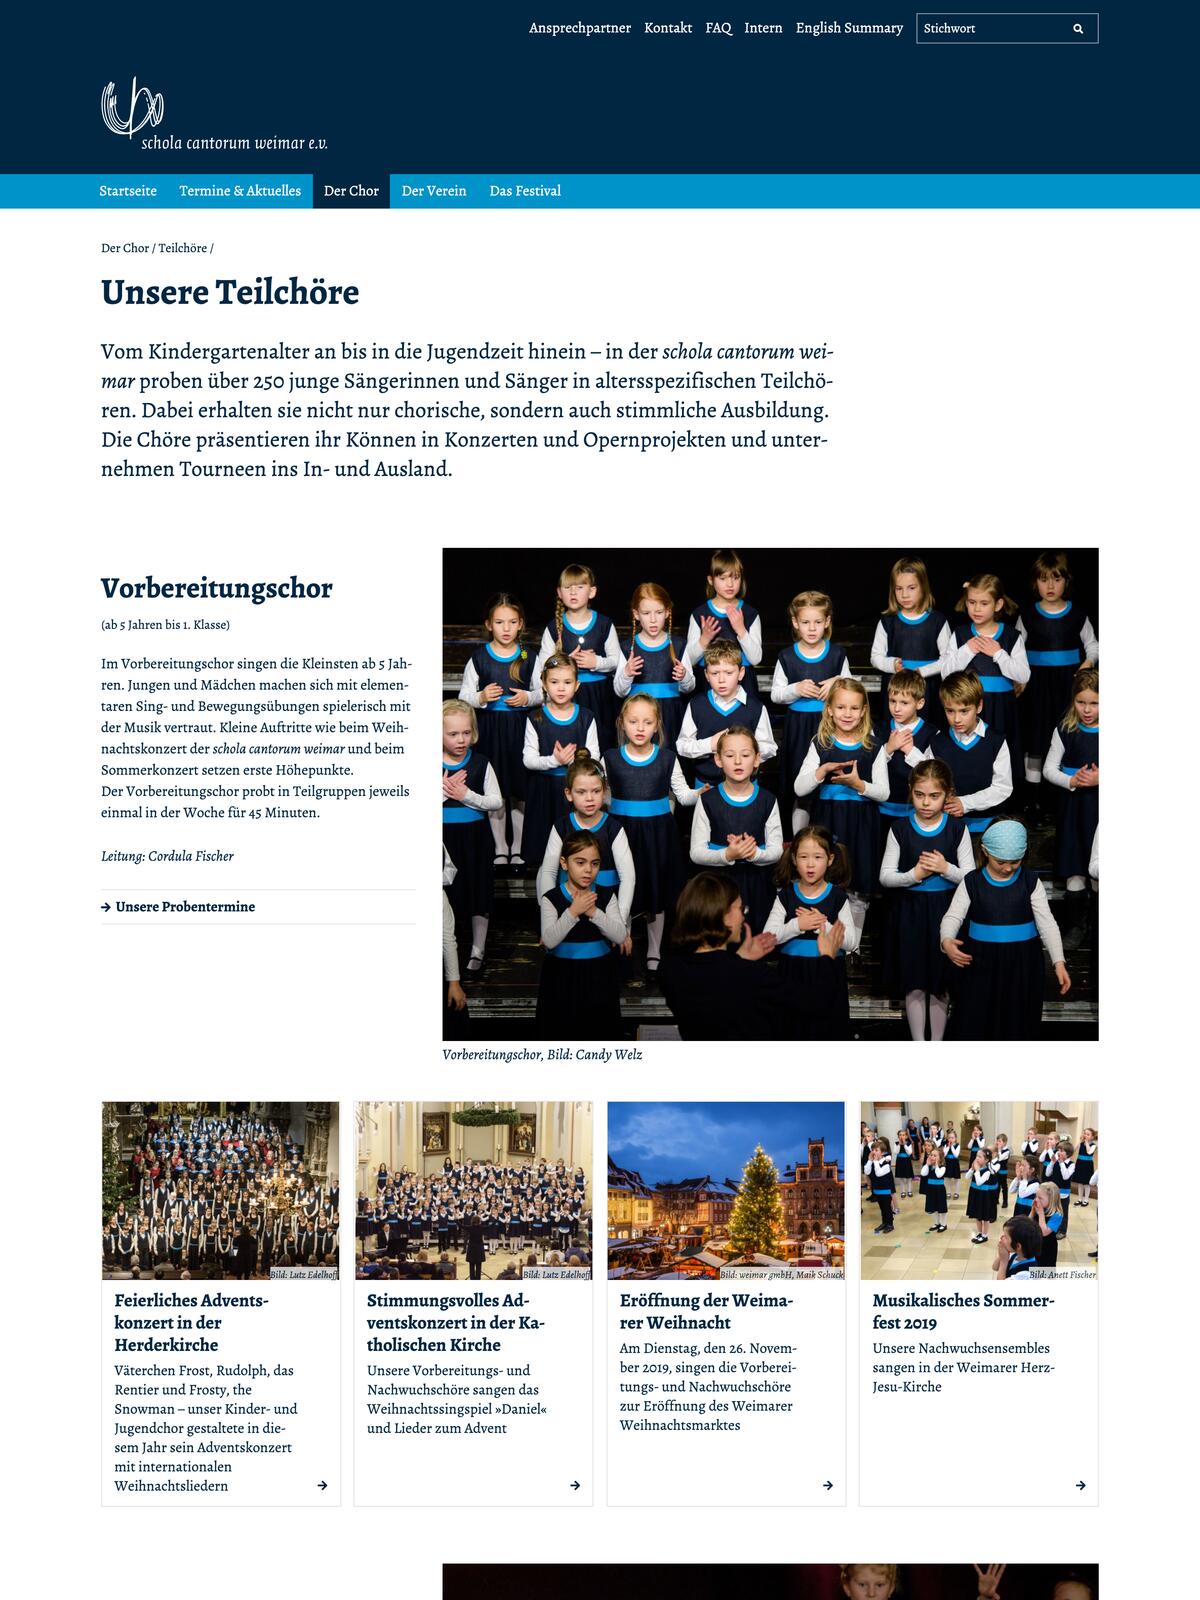 Website der Schola Cantorum Weimar: Seite mit einer Übersicht der Teilchöre